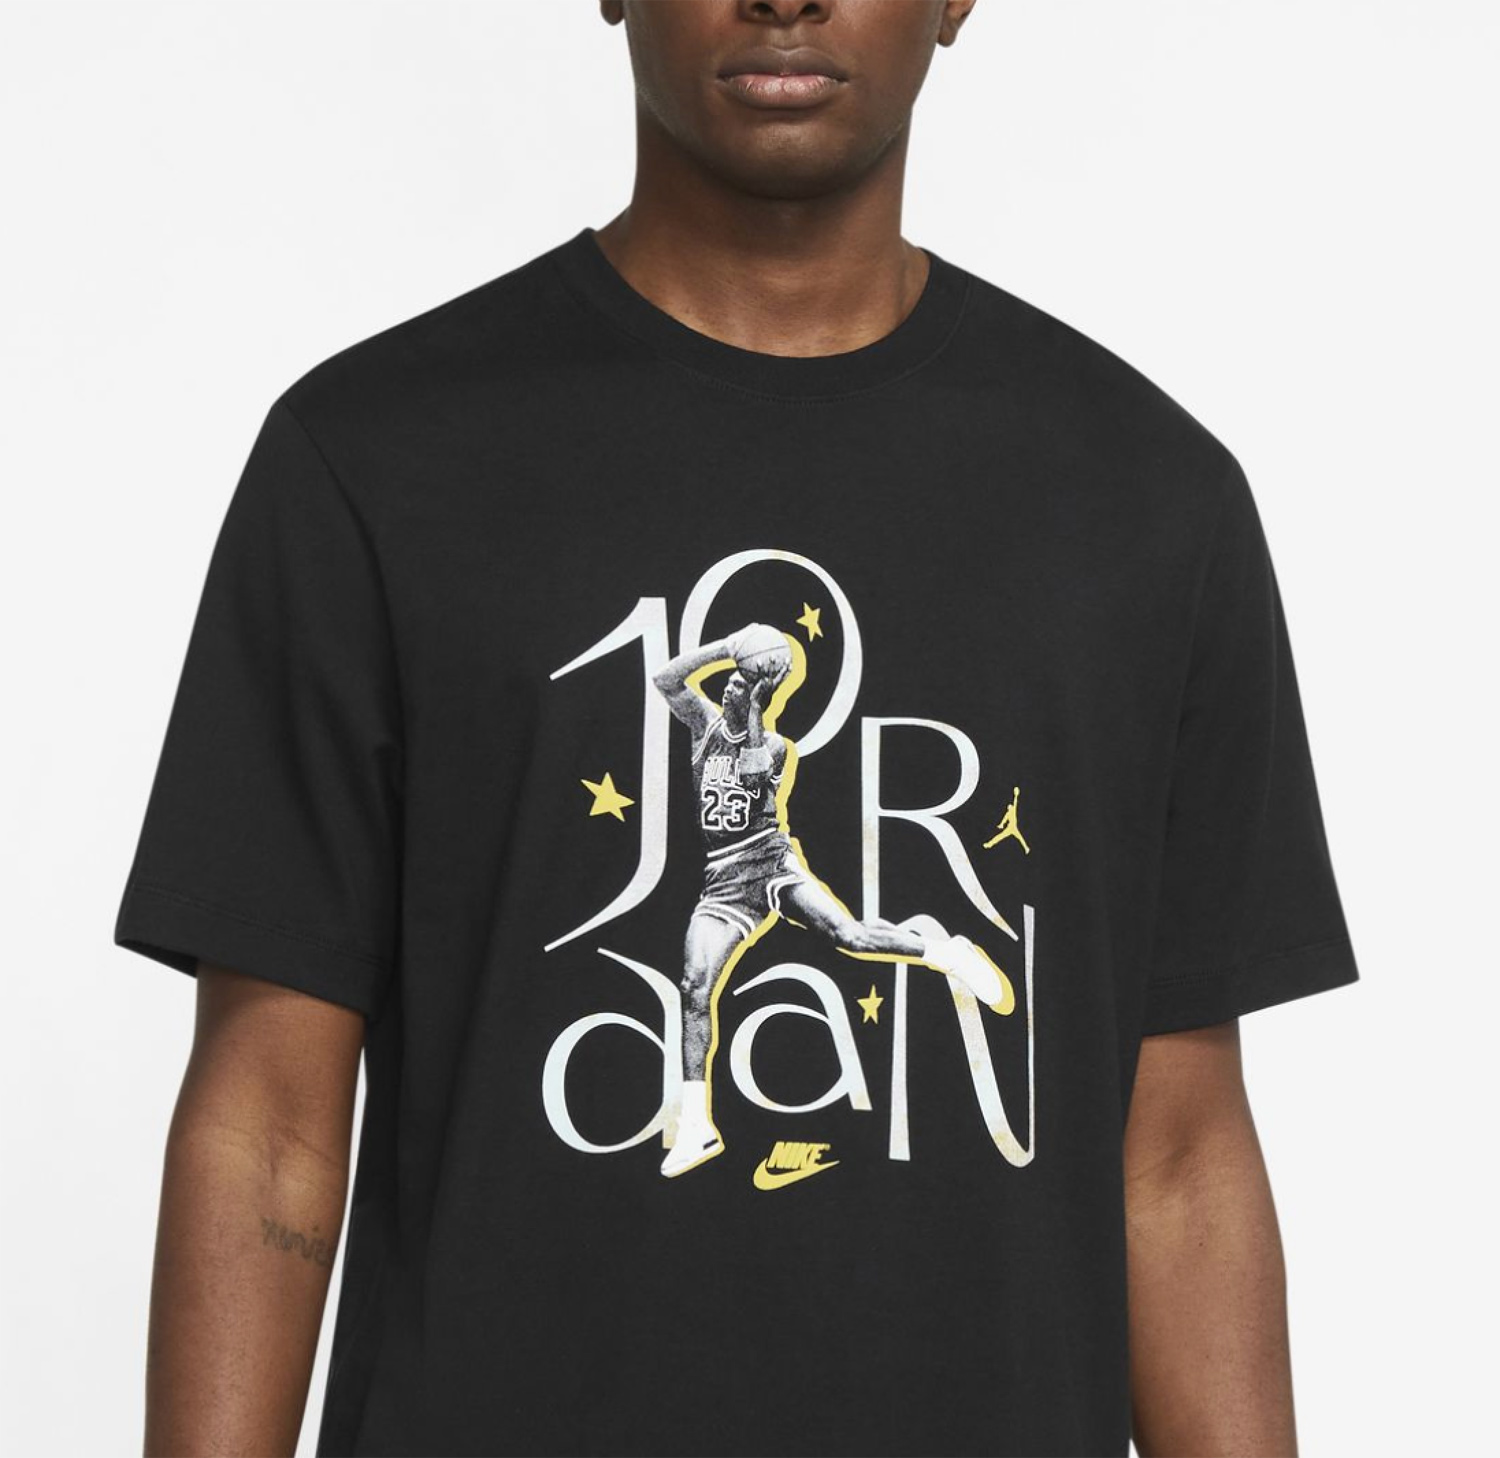 jordan-13-del-sol-shirt